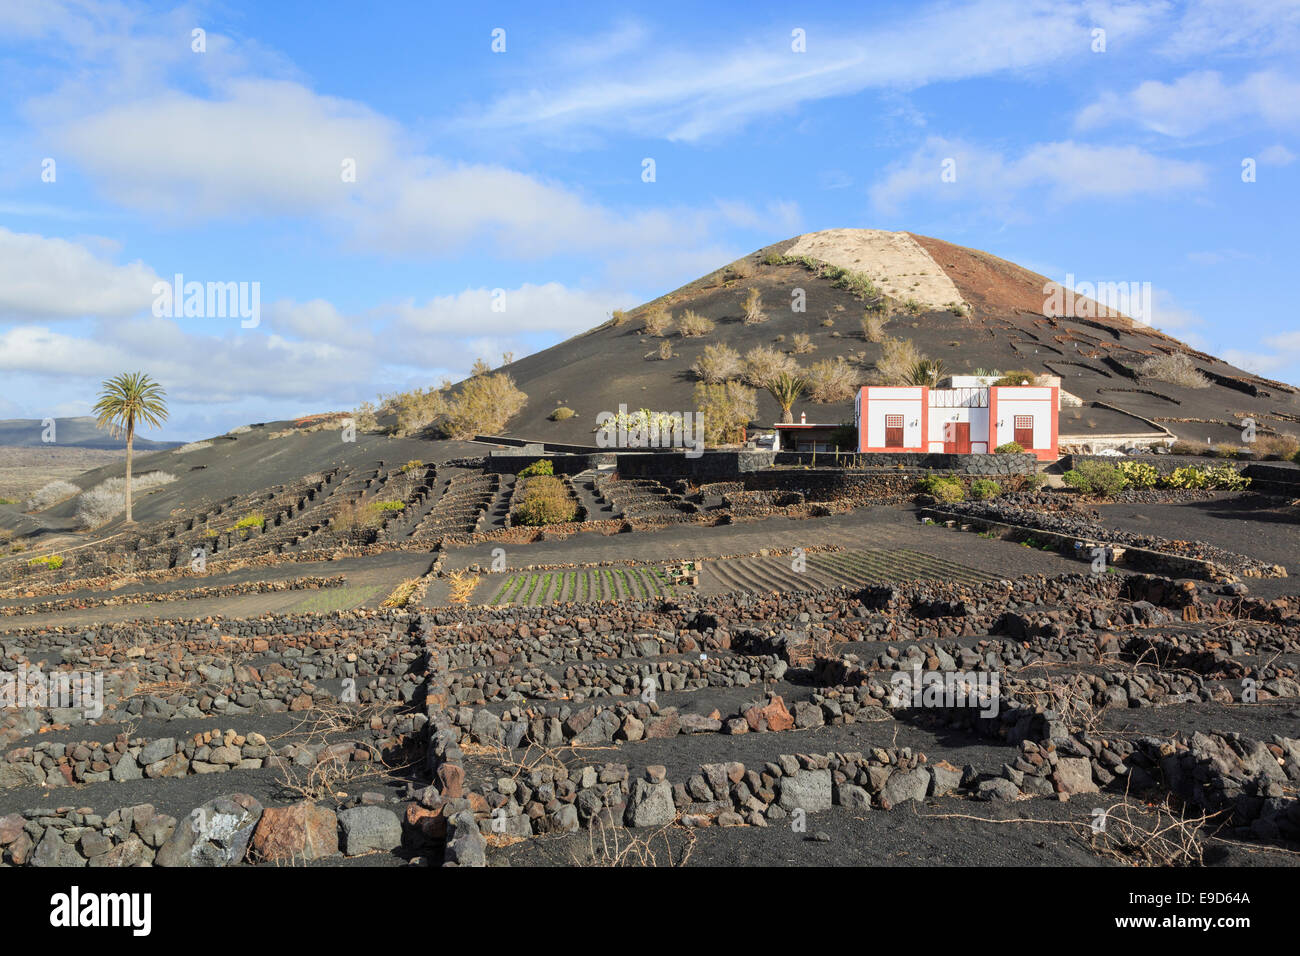 Au-delà d'un établissement vinicole domaine des vignes dans les cendres volcaniques protégés par des murs dans les vignobles de la Geria, Lanzarote, Îles Canaries Banque D'Images